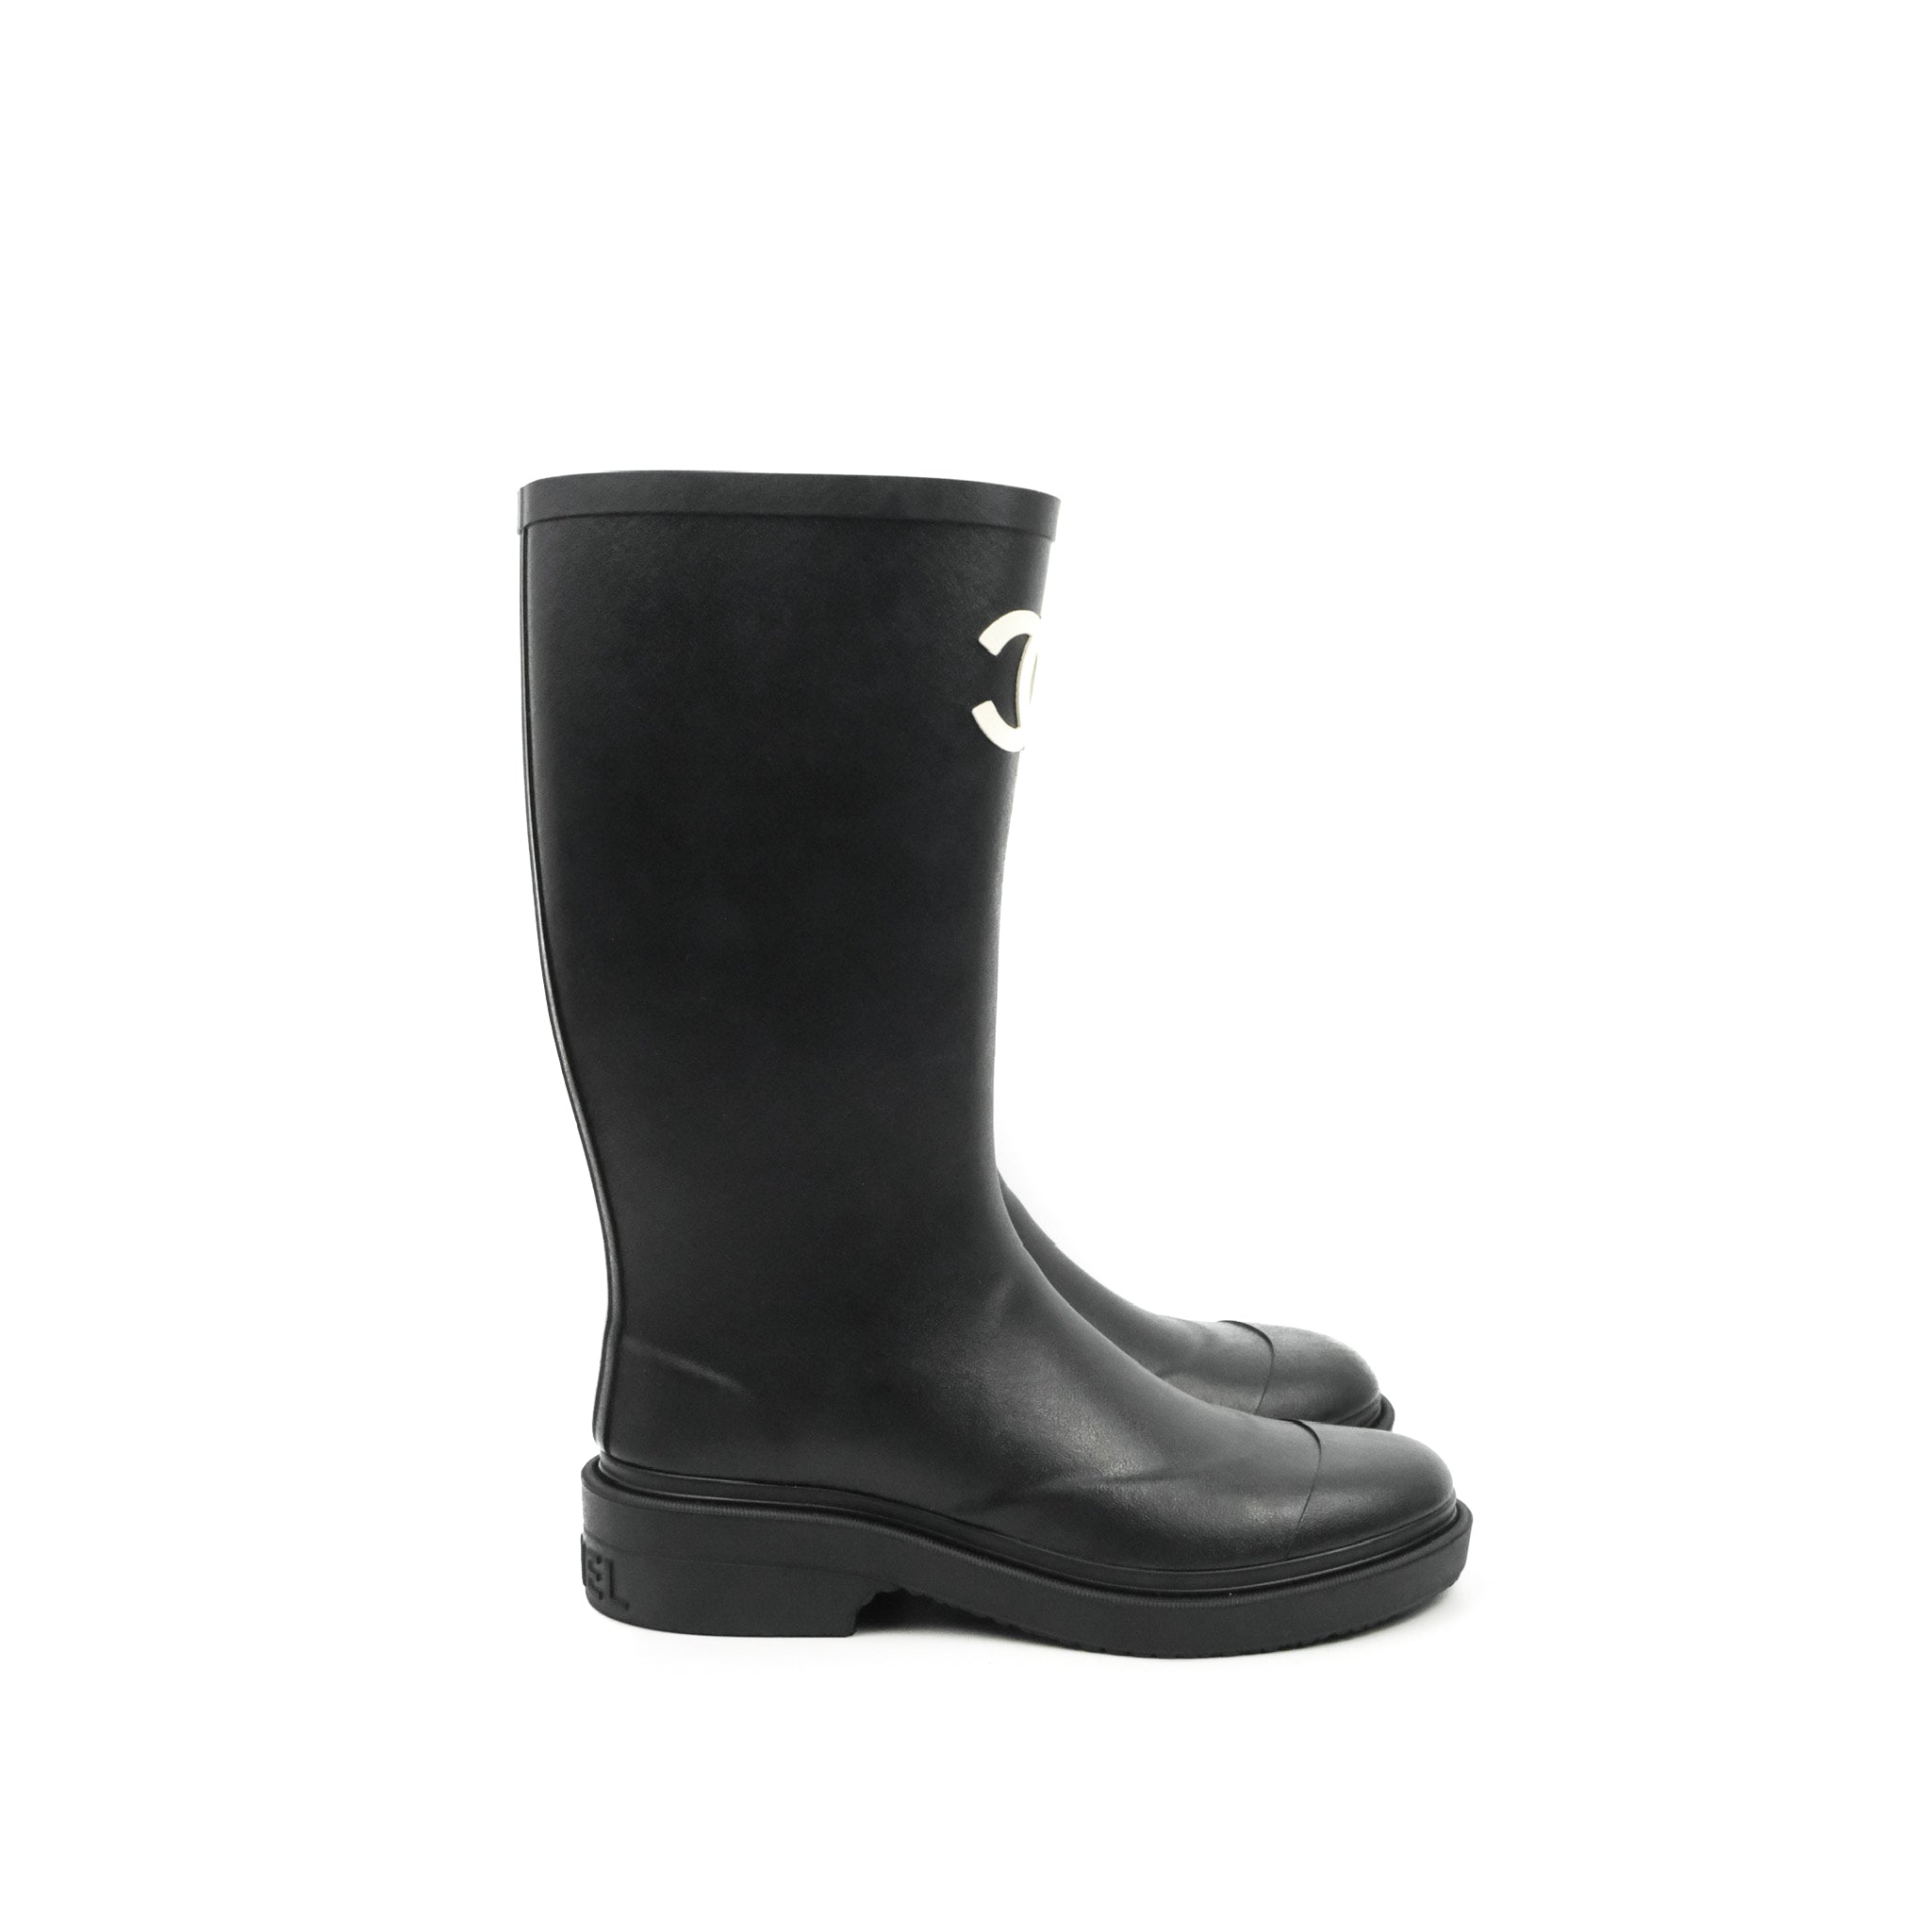 Chanel CC Black Rubber Rain Boots Size 35 – Coco Approved Studio